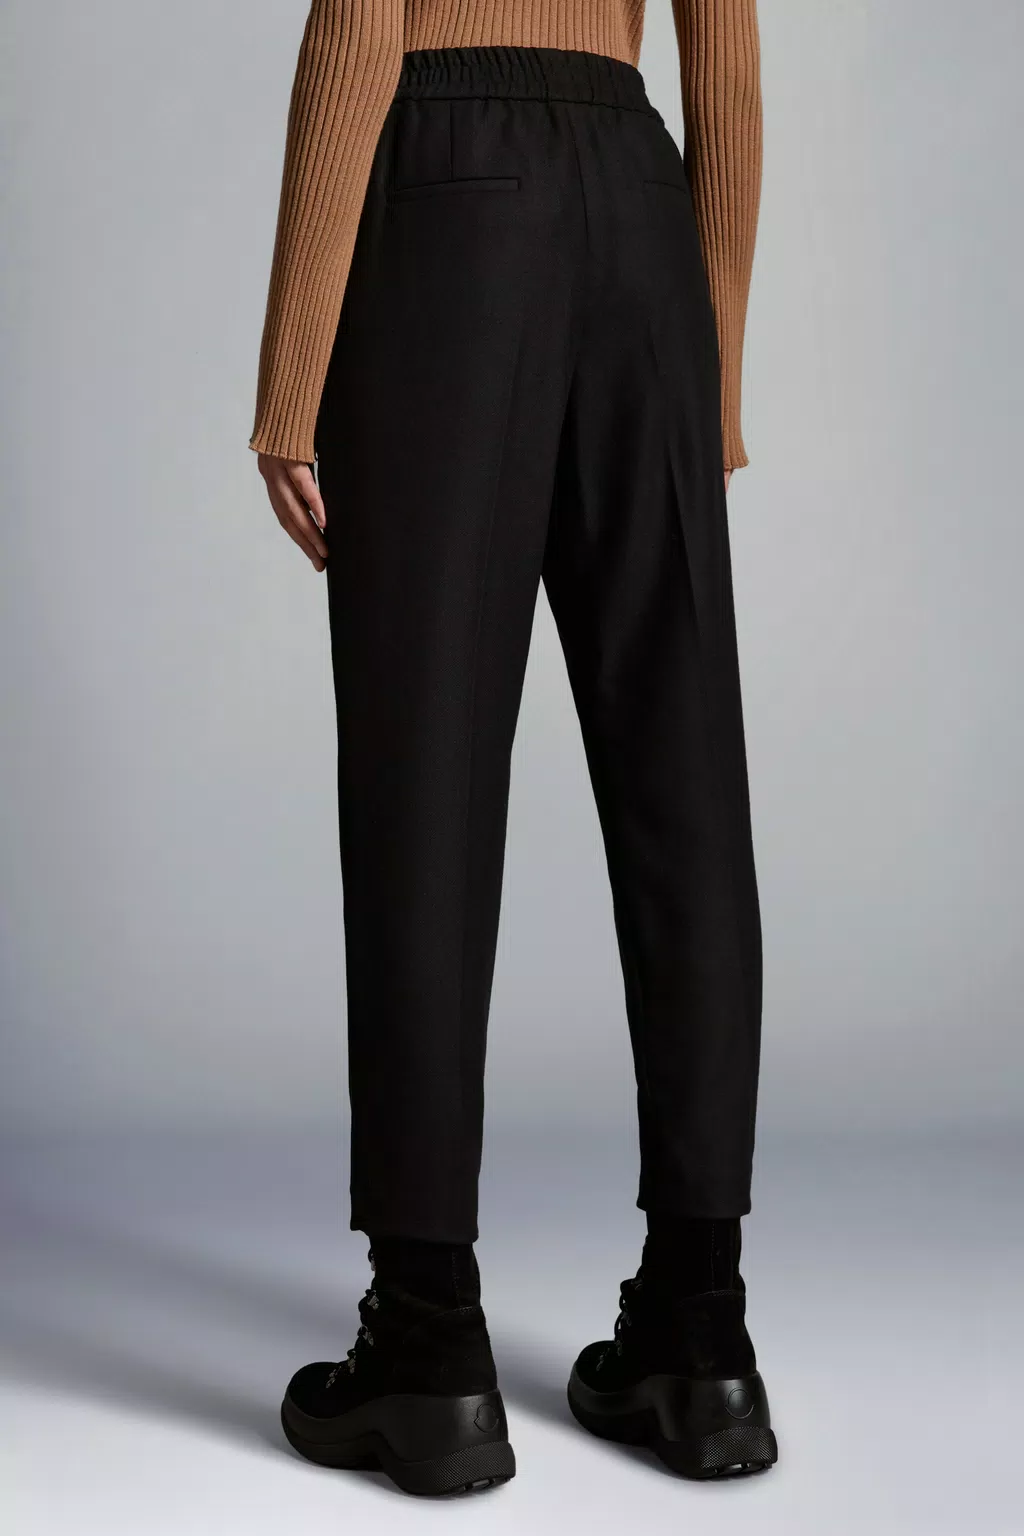 Black Flannel Jogging Pants - Pants & Shorts for Women | Moncler US